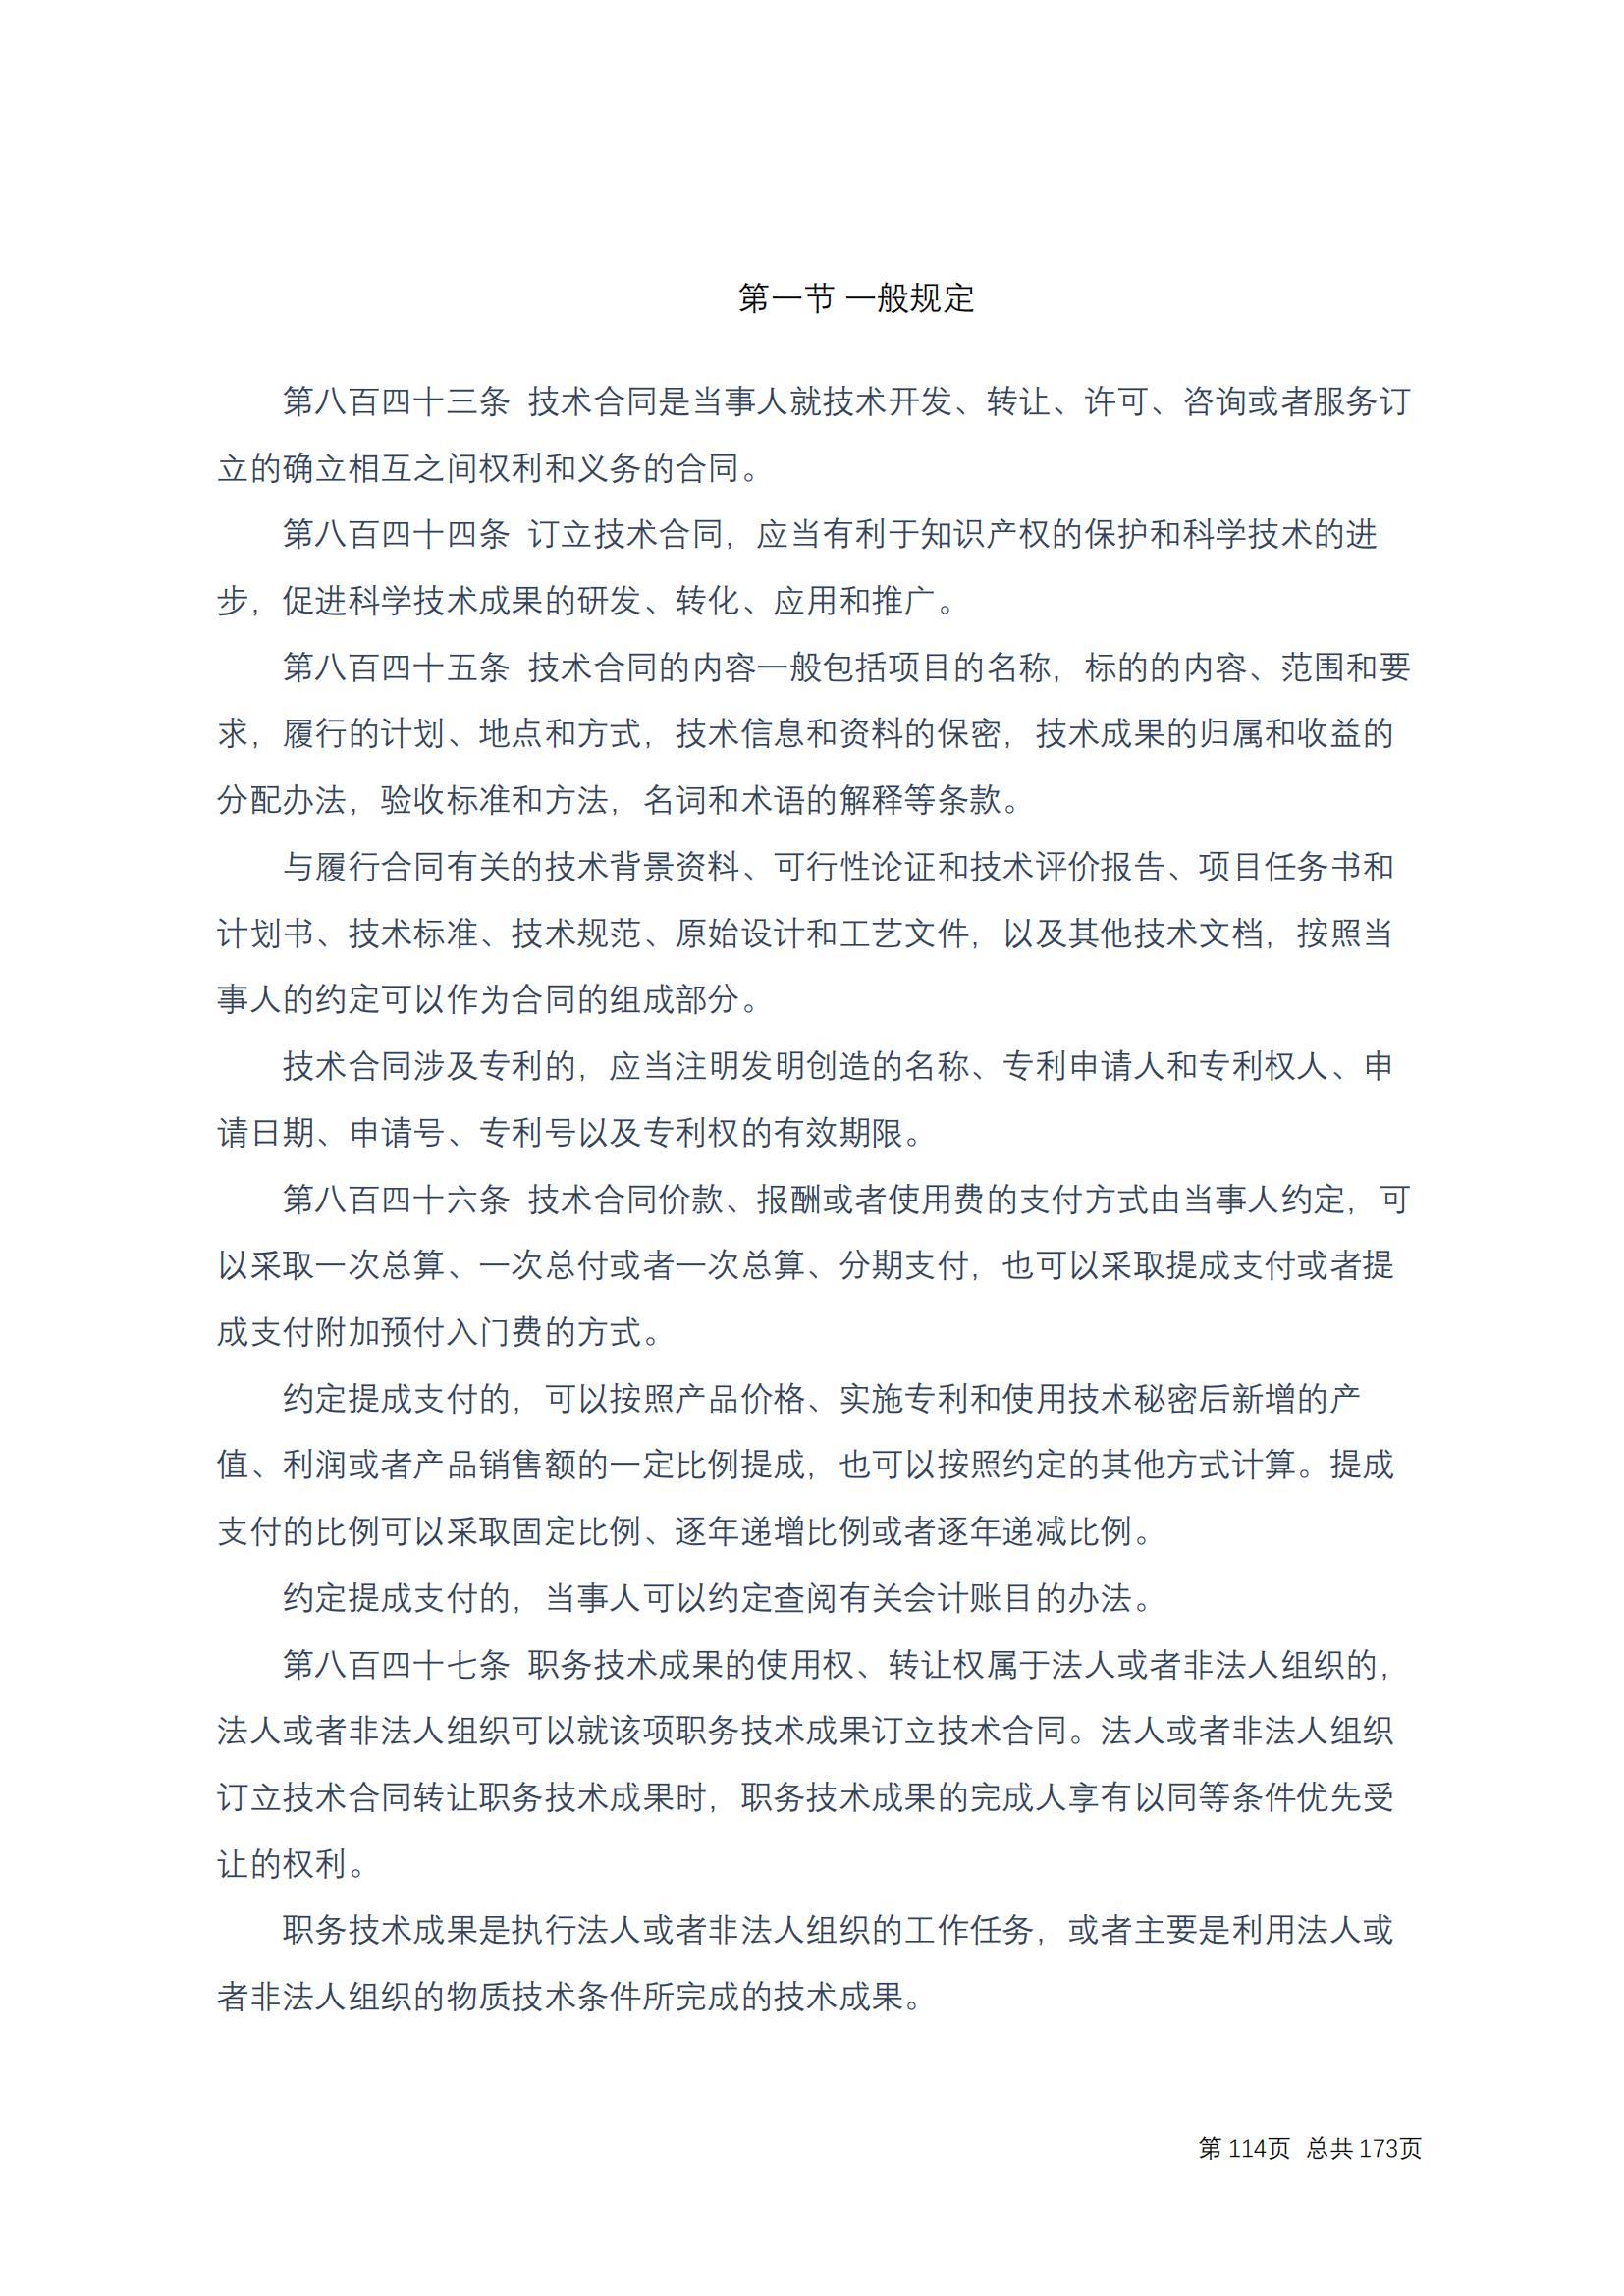 中华人民共和国民法典 修改过_113